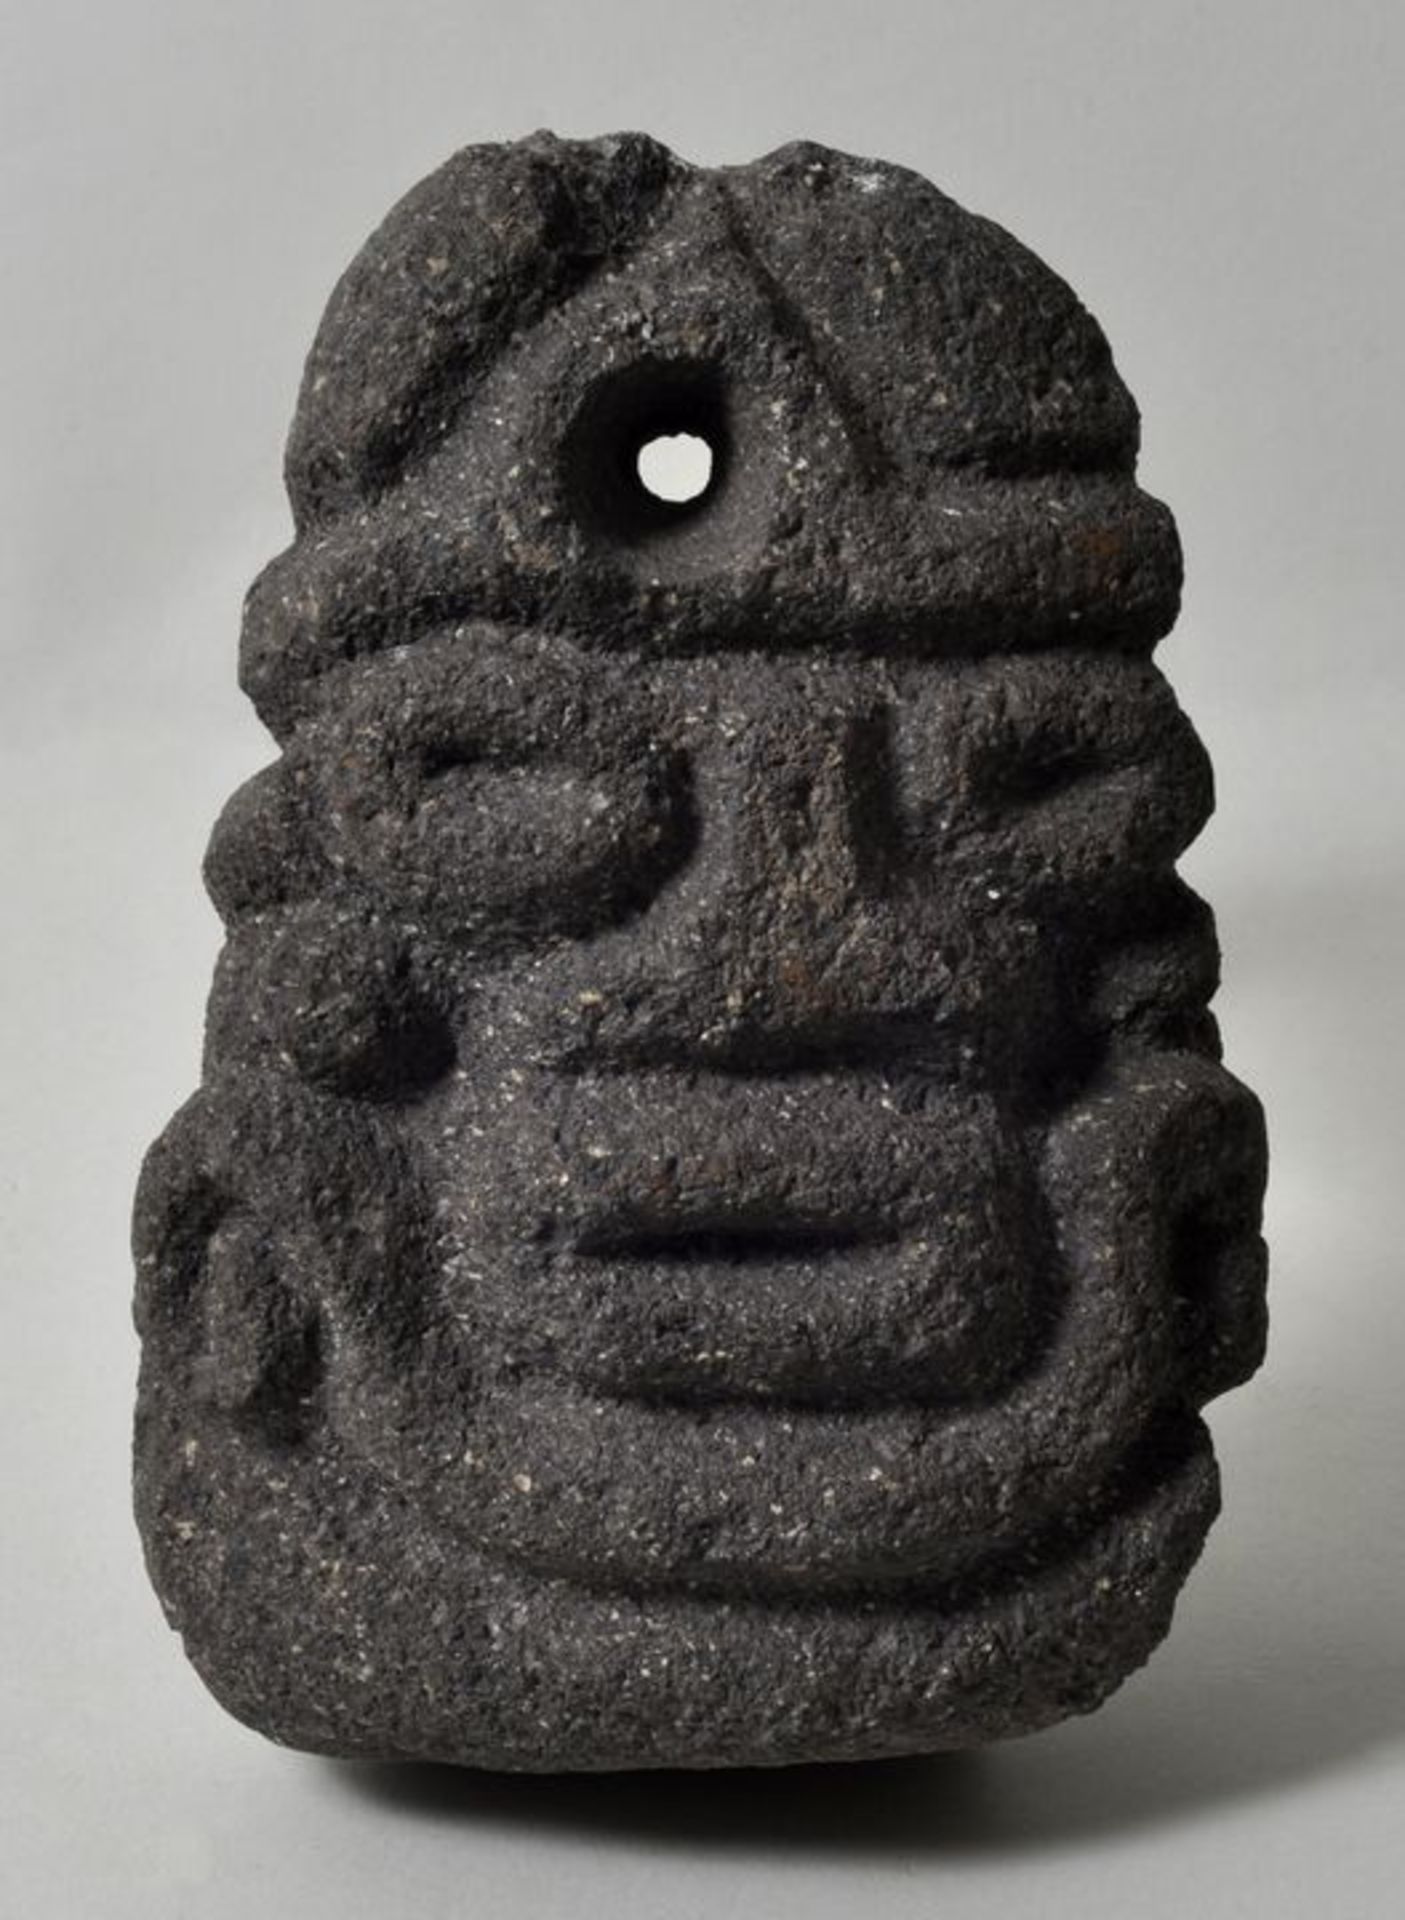 Steinfigur/ Maske, präkolumbianisch, Mixteken-Kultur (?)Basalt. Herausgearbeitet ein anthropomorphes